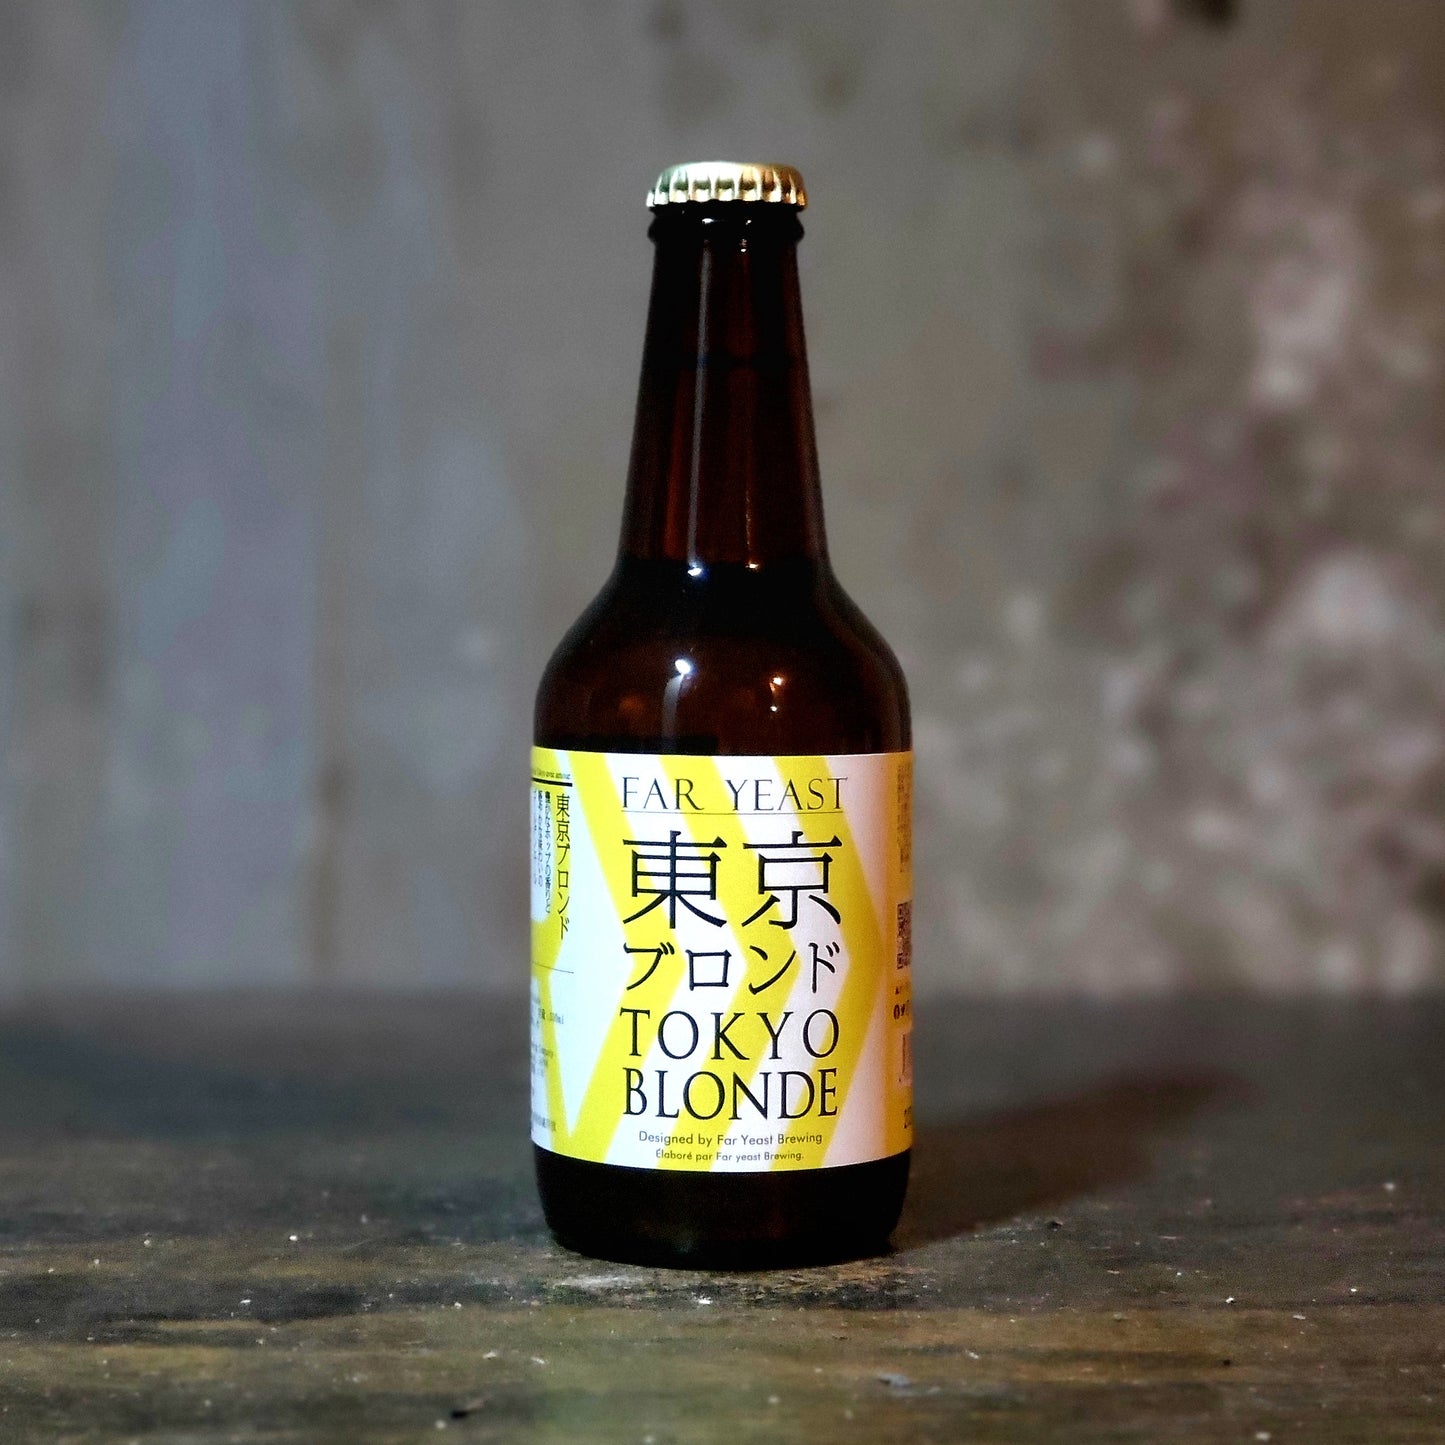 Far Yeast "Tokyo" Blonde Ale